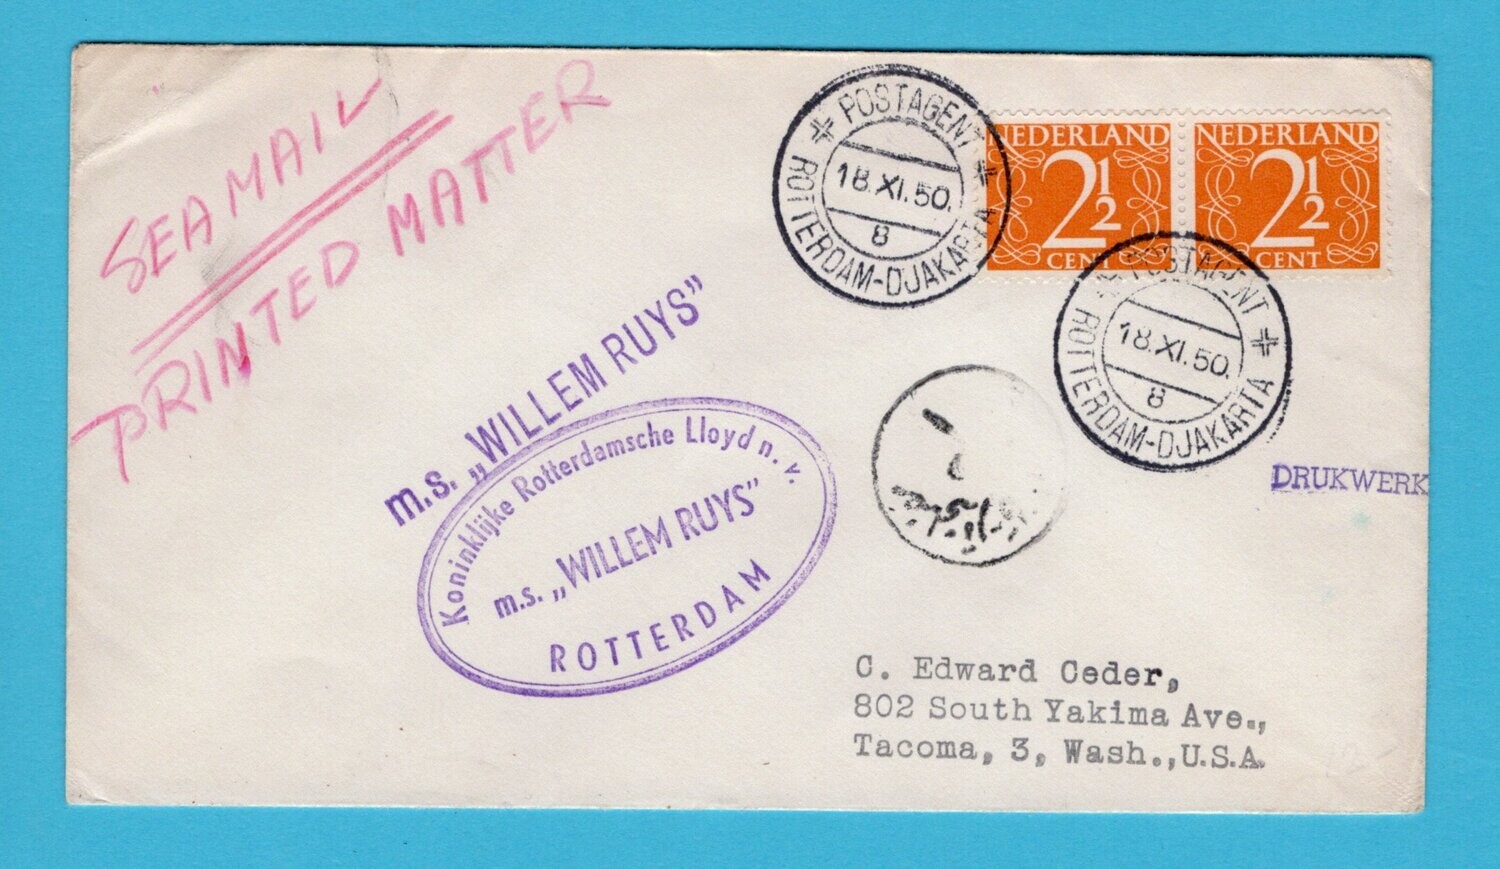 NEDERLAND drukwerk 1950 Postagent Rotterdam-Djakarta M.S. Ruys